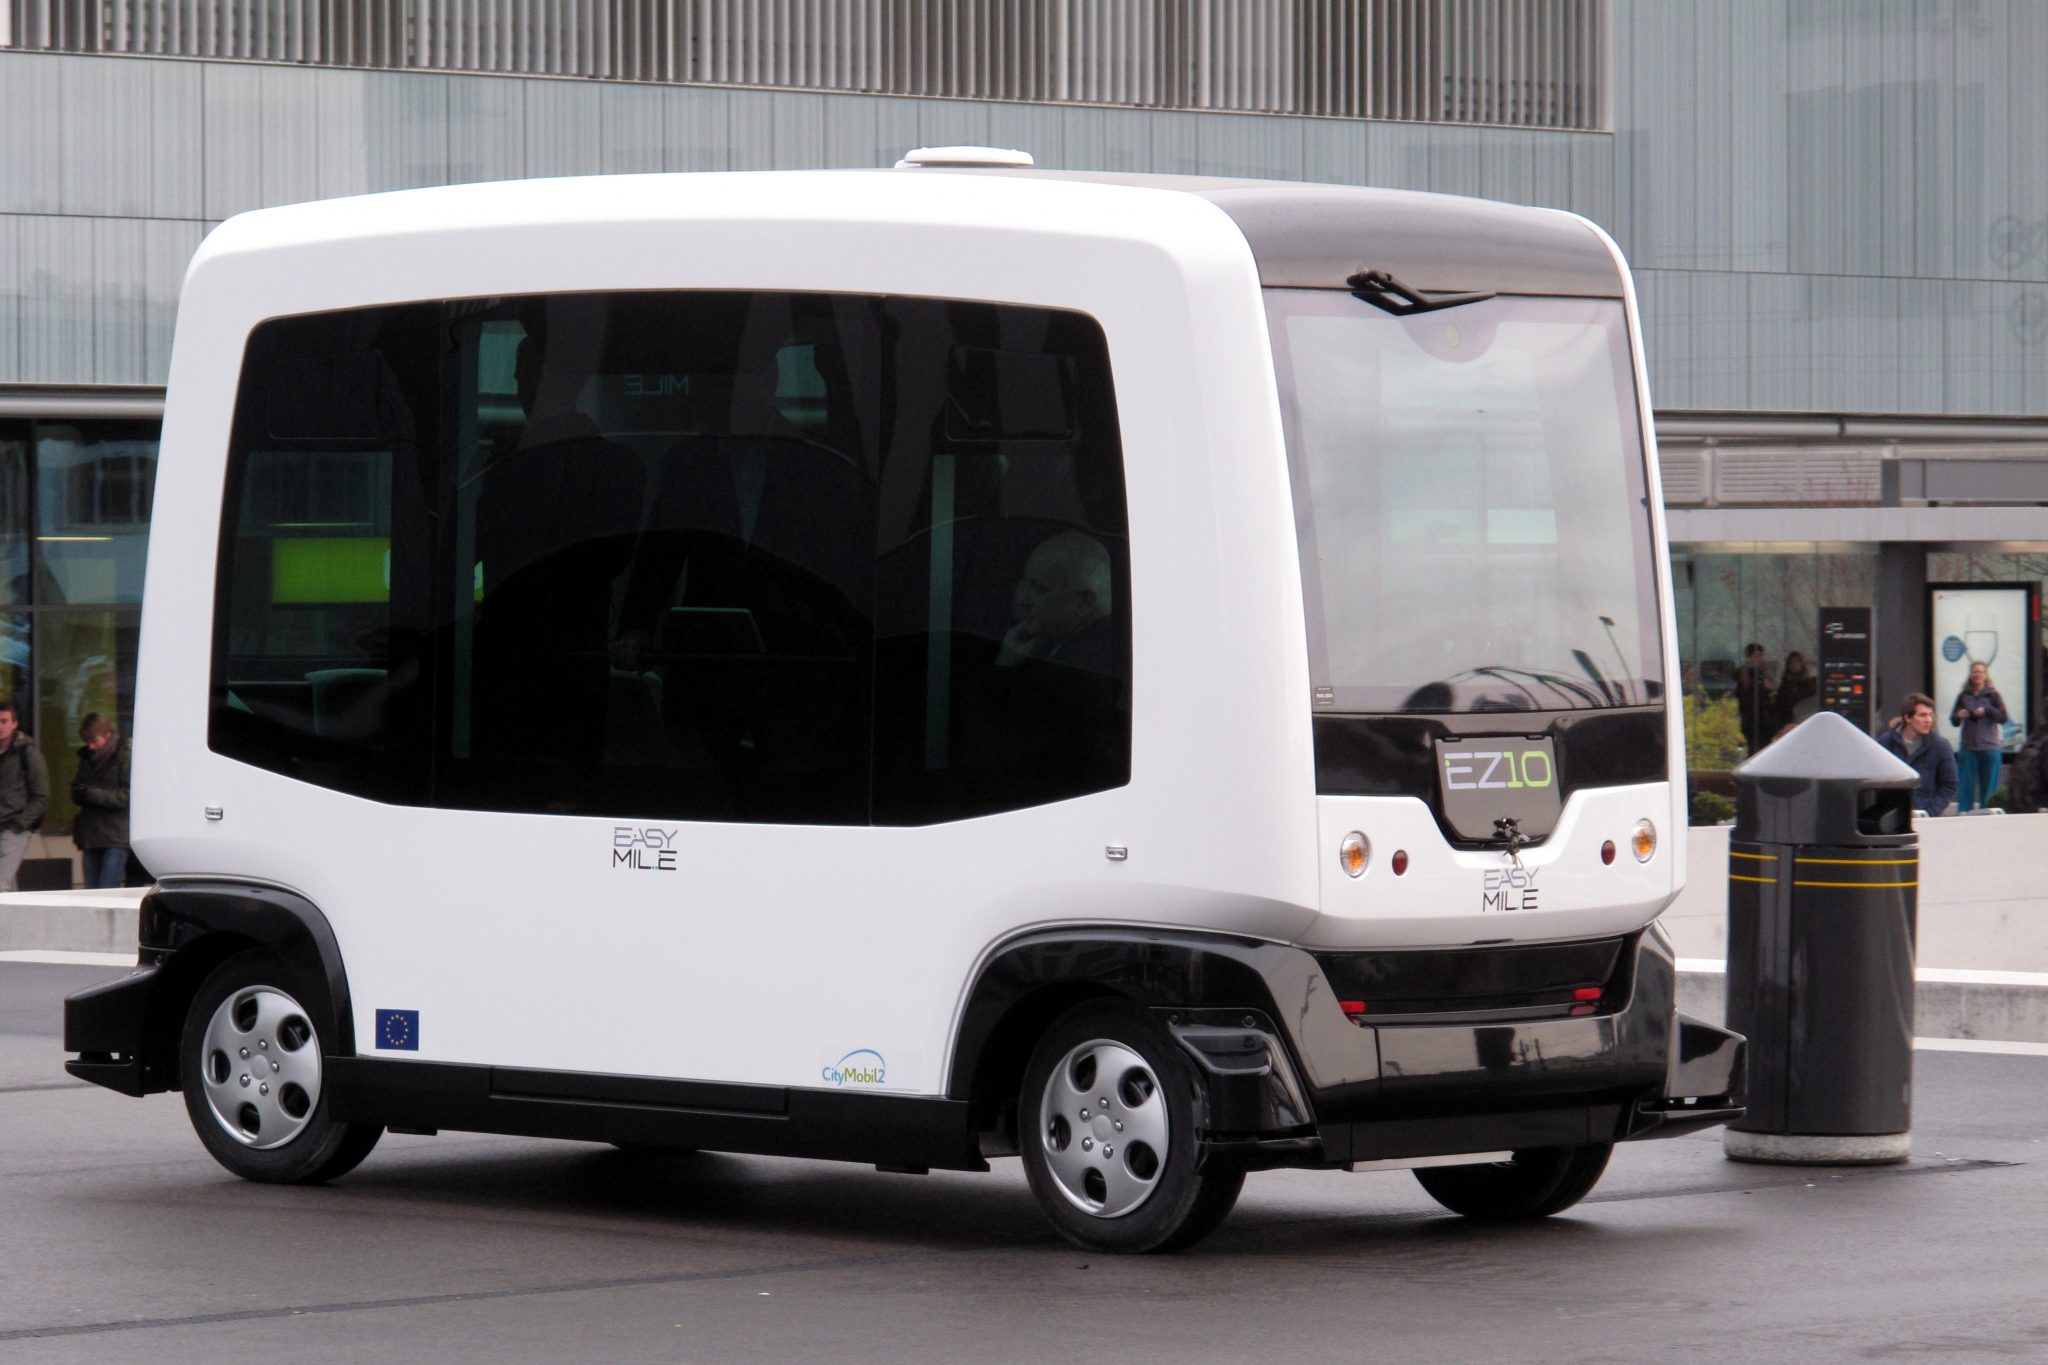 Australian Electric Bus Company Embraces Autonomous Vehicle Technology